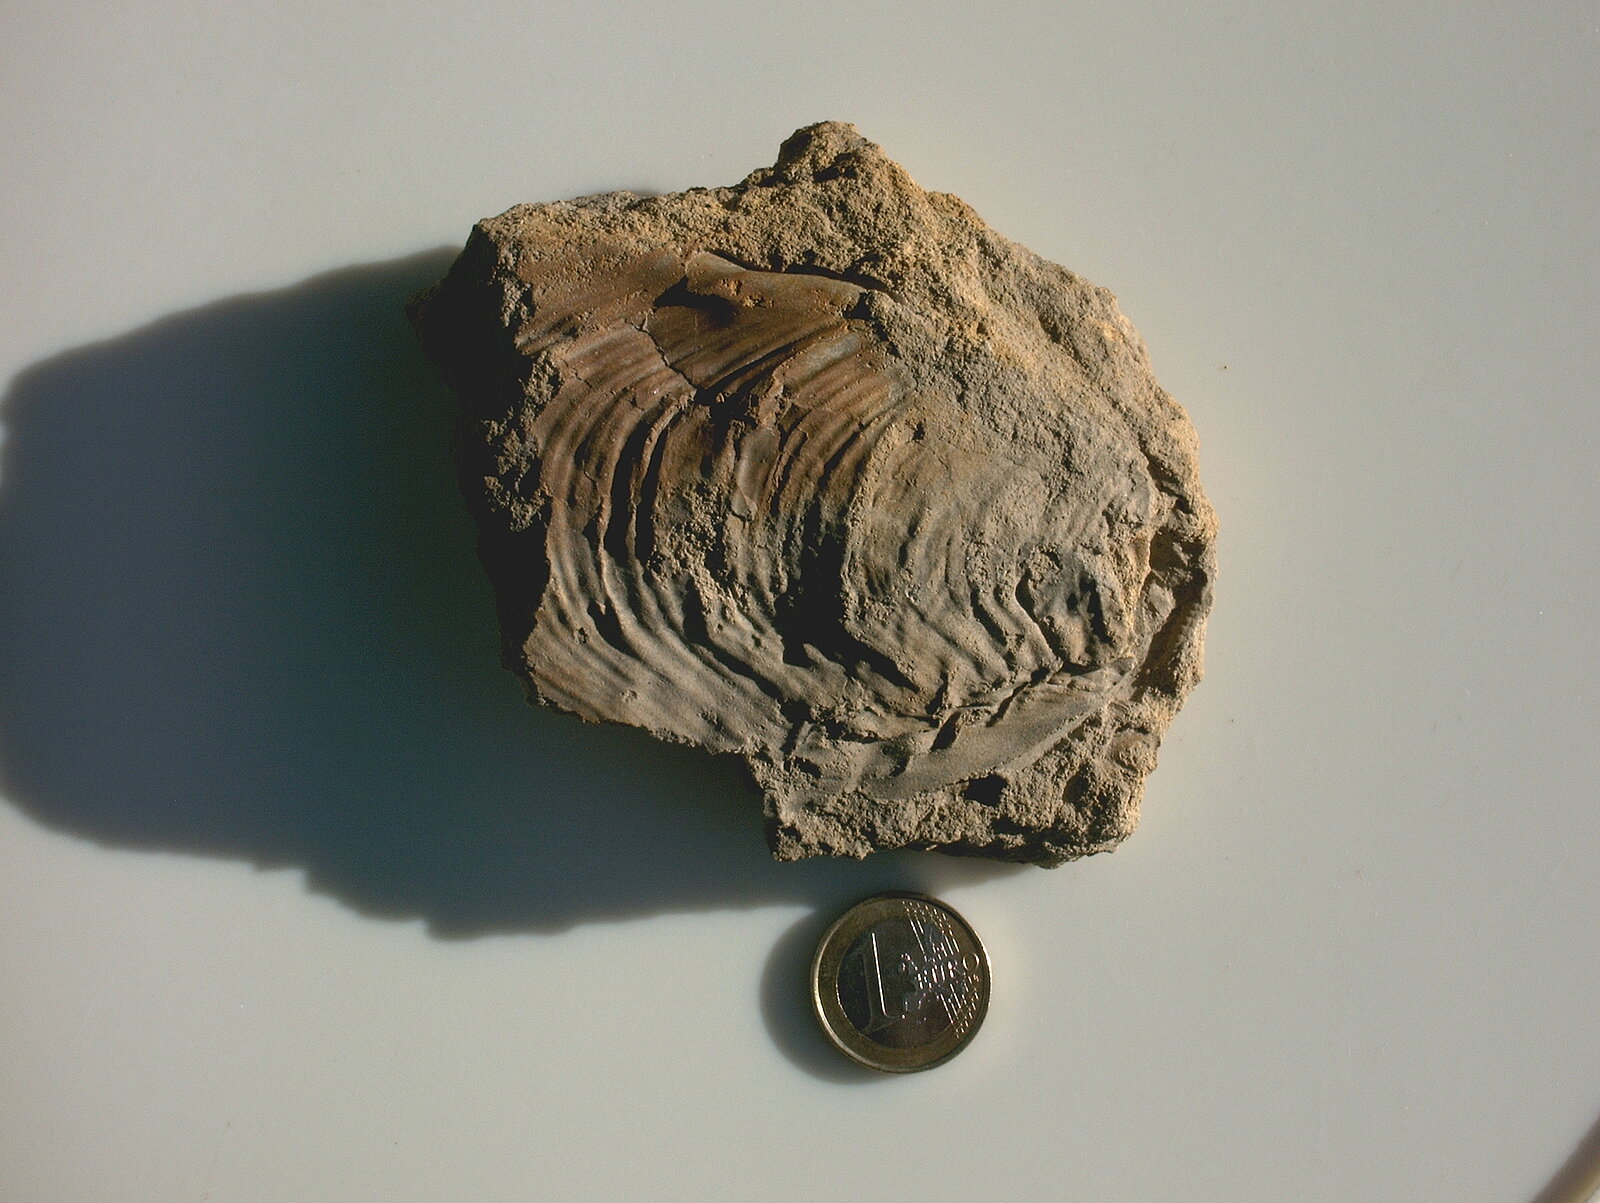 Etw 8 cm großes Muschelfossil in Sandstein